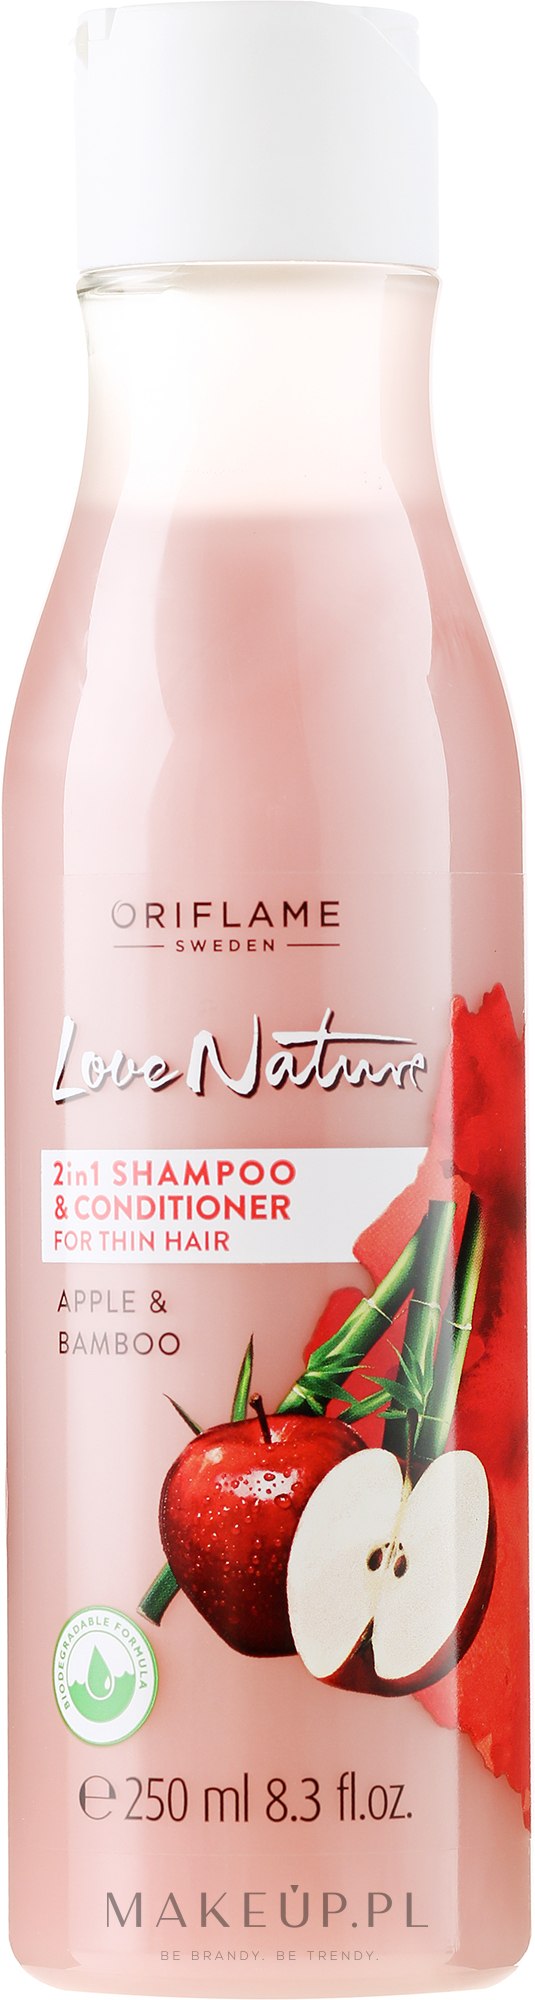 oriflame szampon 2 w 1 z jabłkiem i bambusem